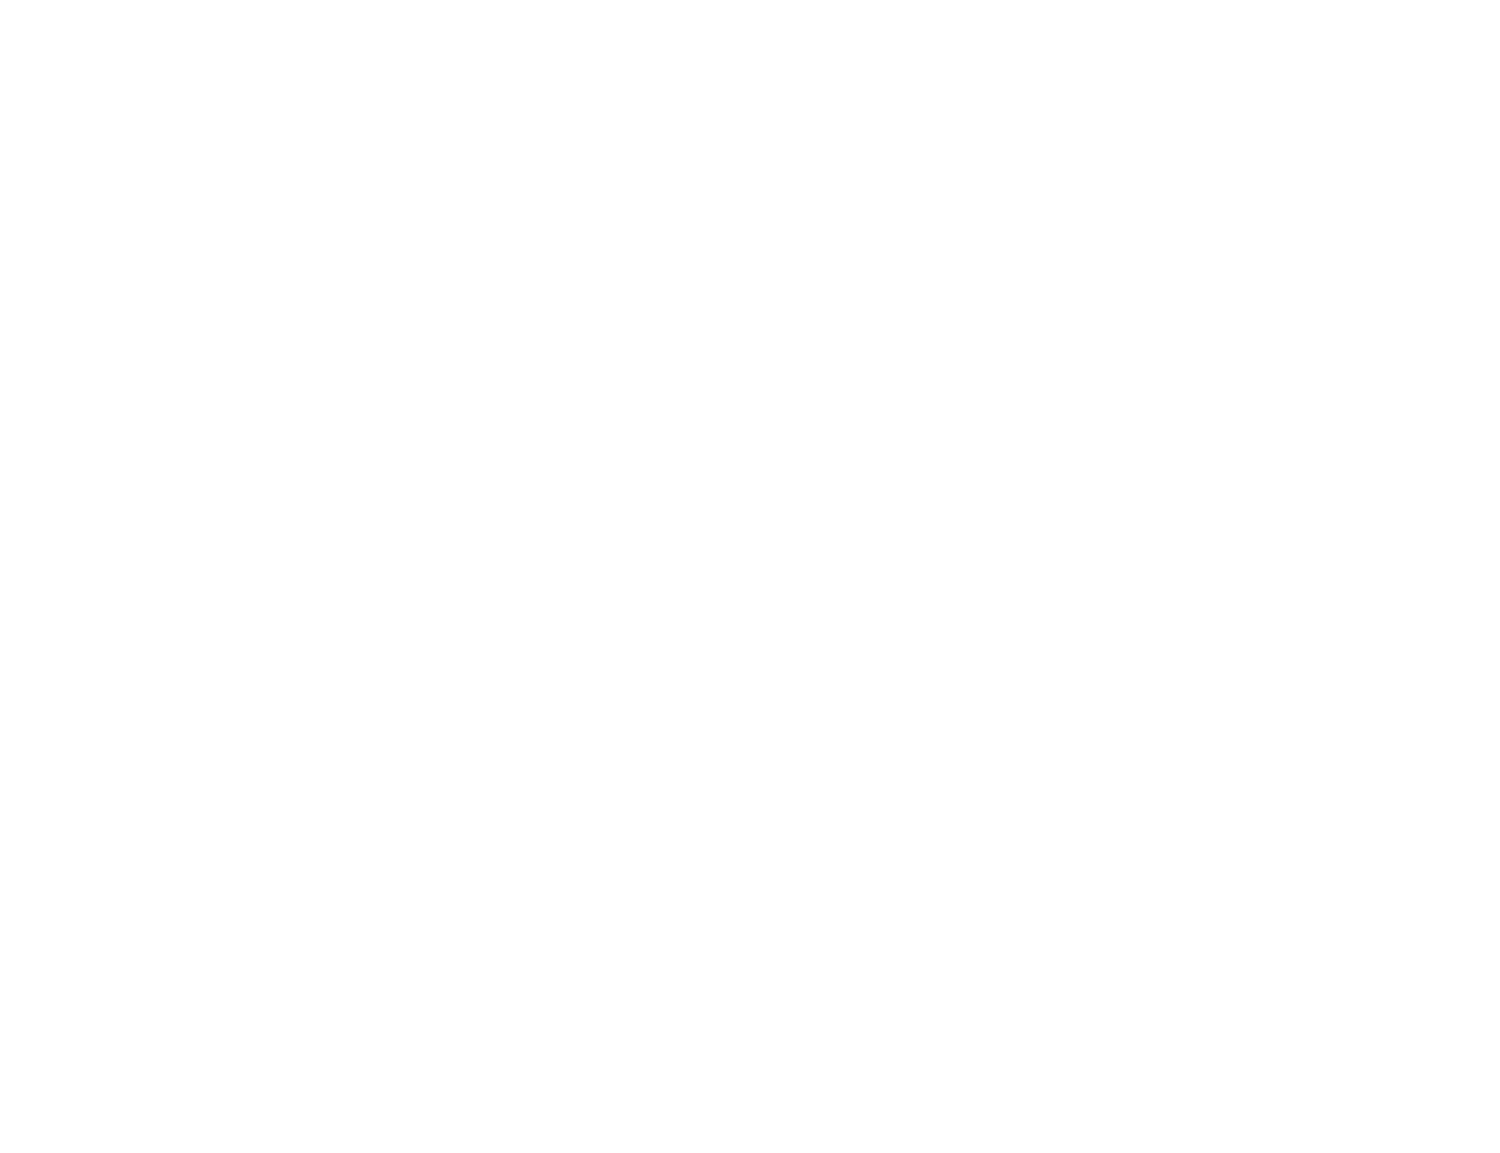 Christopher Glenn